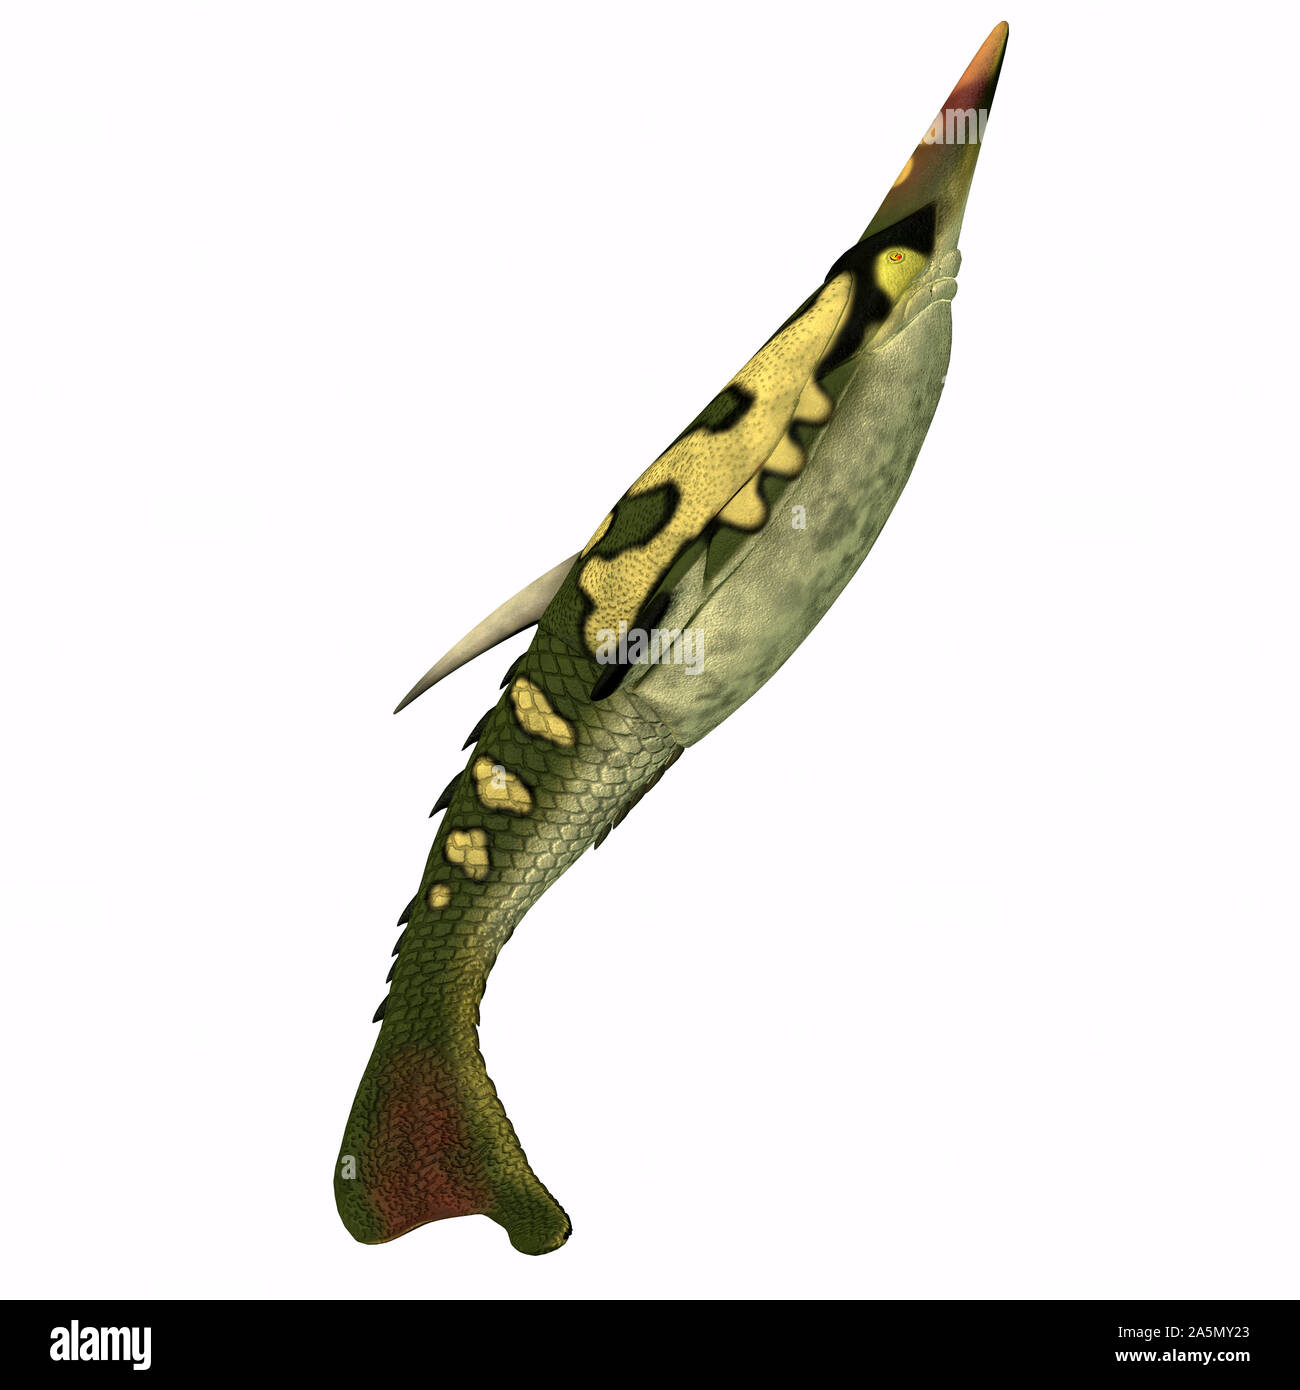 Pteraspis era un carnivoro pesci marini che era stato pesantemente corazzati e visse durante il periodo Devoniano. Foto Stock